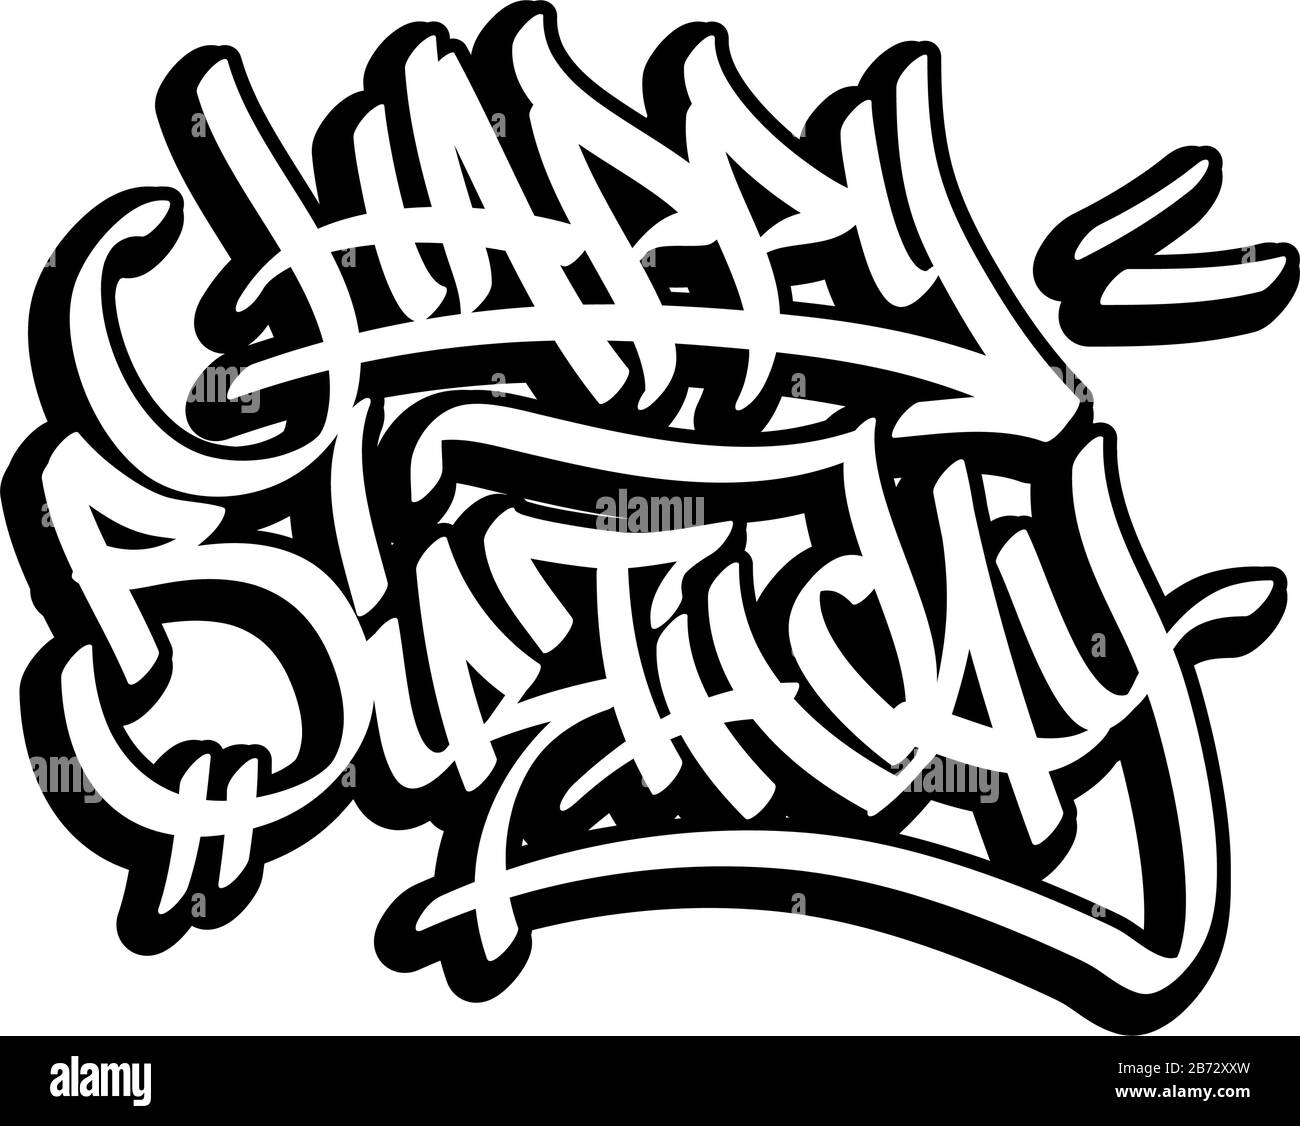 Graffiti Vectors Banque D Image Et Photos Page 4 Alamy